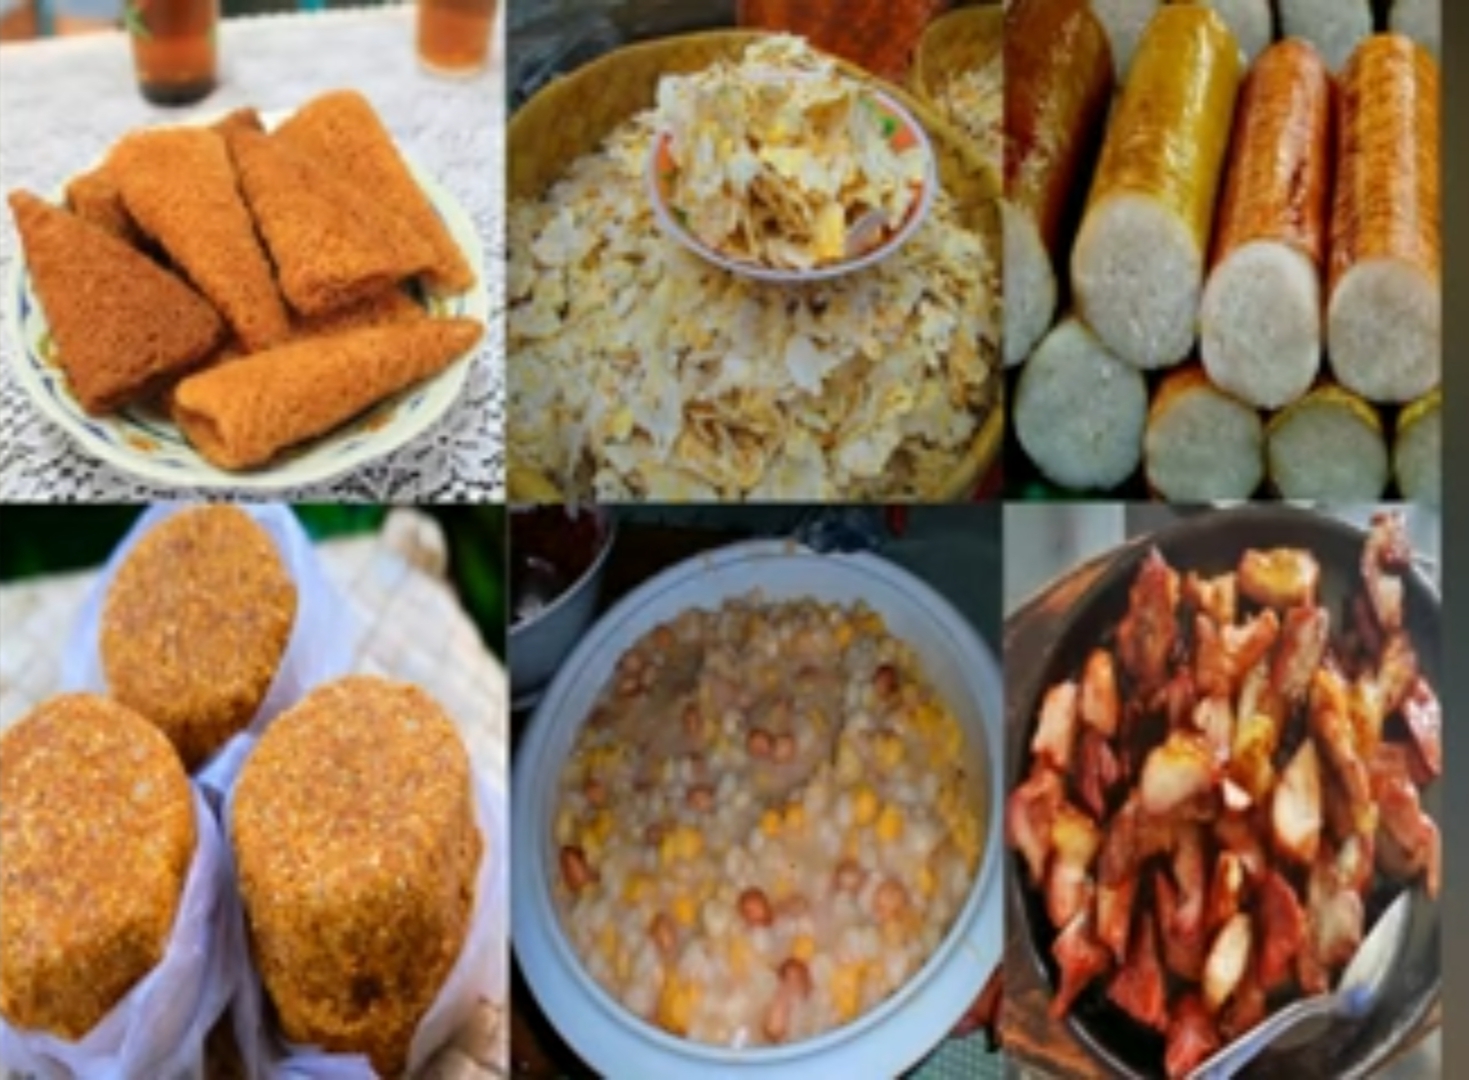 16 Makanan Khas Tradisional Nusa Tenggara Timur yang Wajib Dicoba, Nomor 10 Mirip Cilok di Jawa